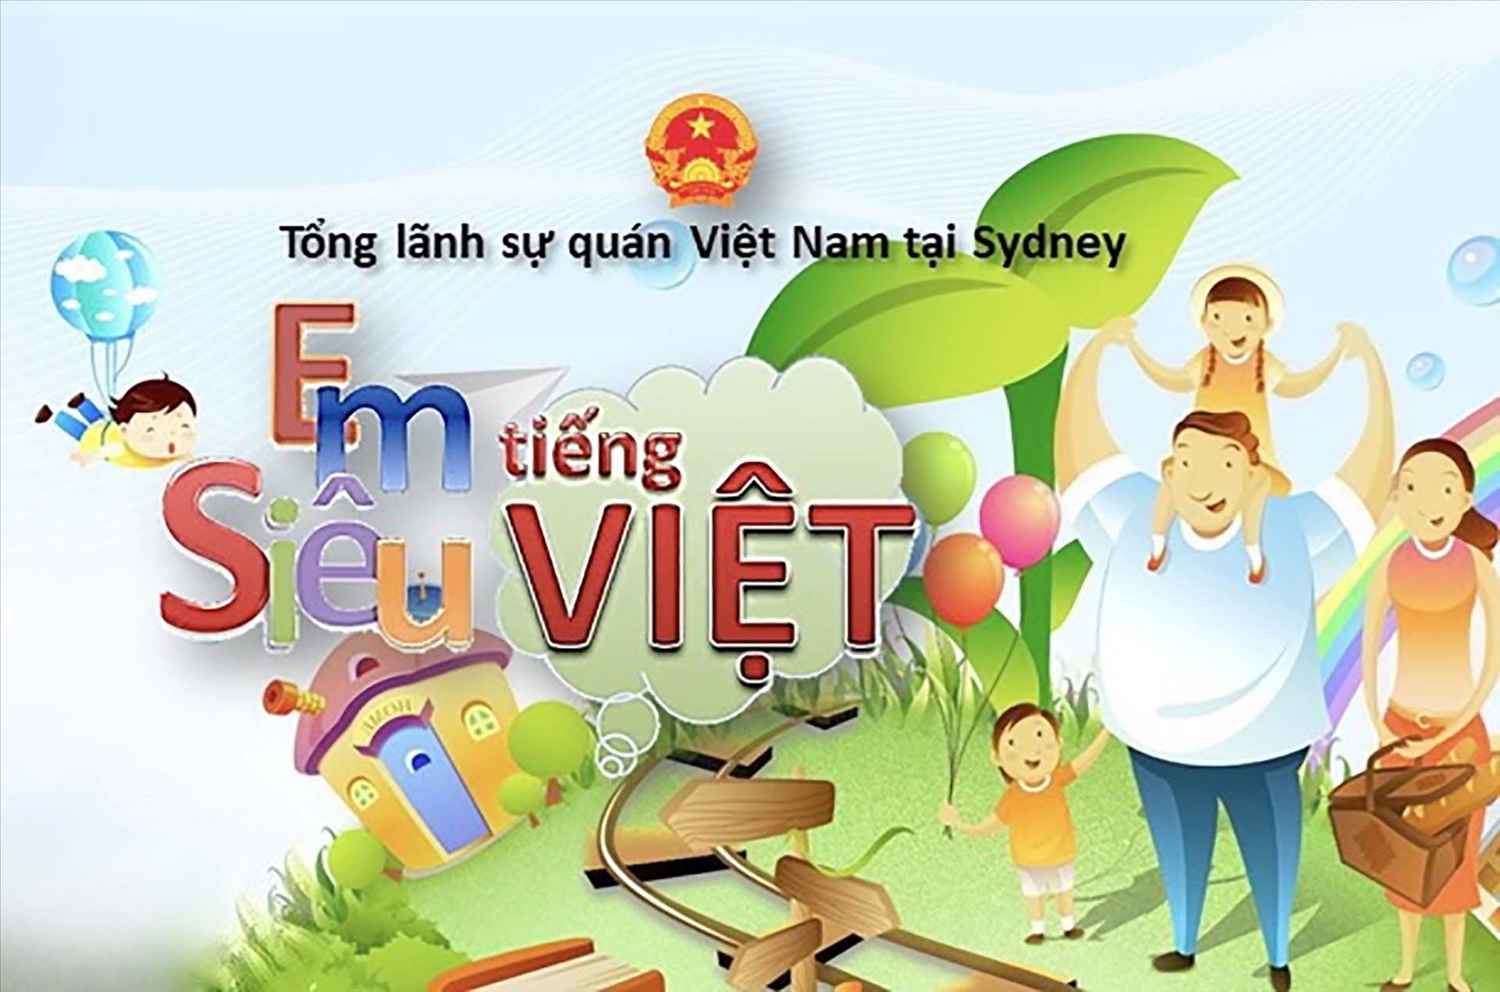 Cuộc thi “Em siêu tiếng Việt” diễn ra từ ngày 1/6 đến hết ngày 15/8, dành cho trẻ em ở độ tuổi từ 6-15 đang sinh sống tại Australia.